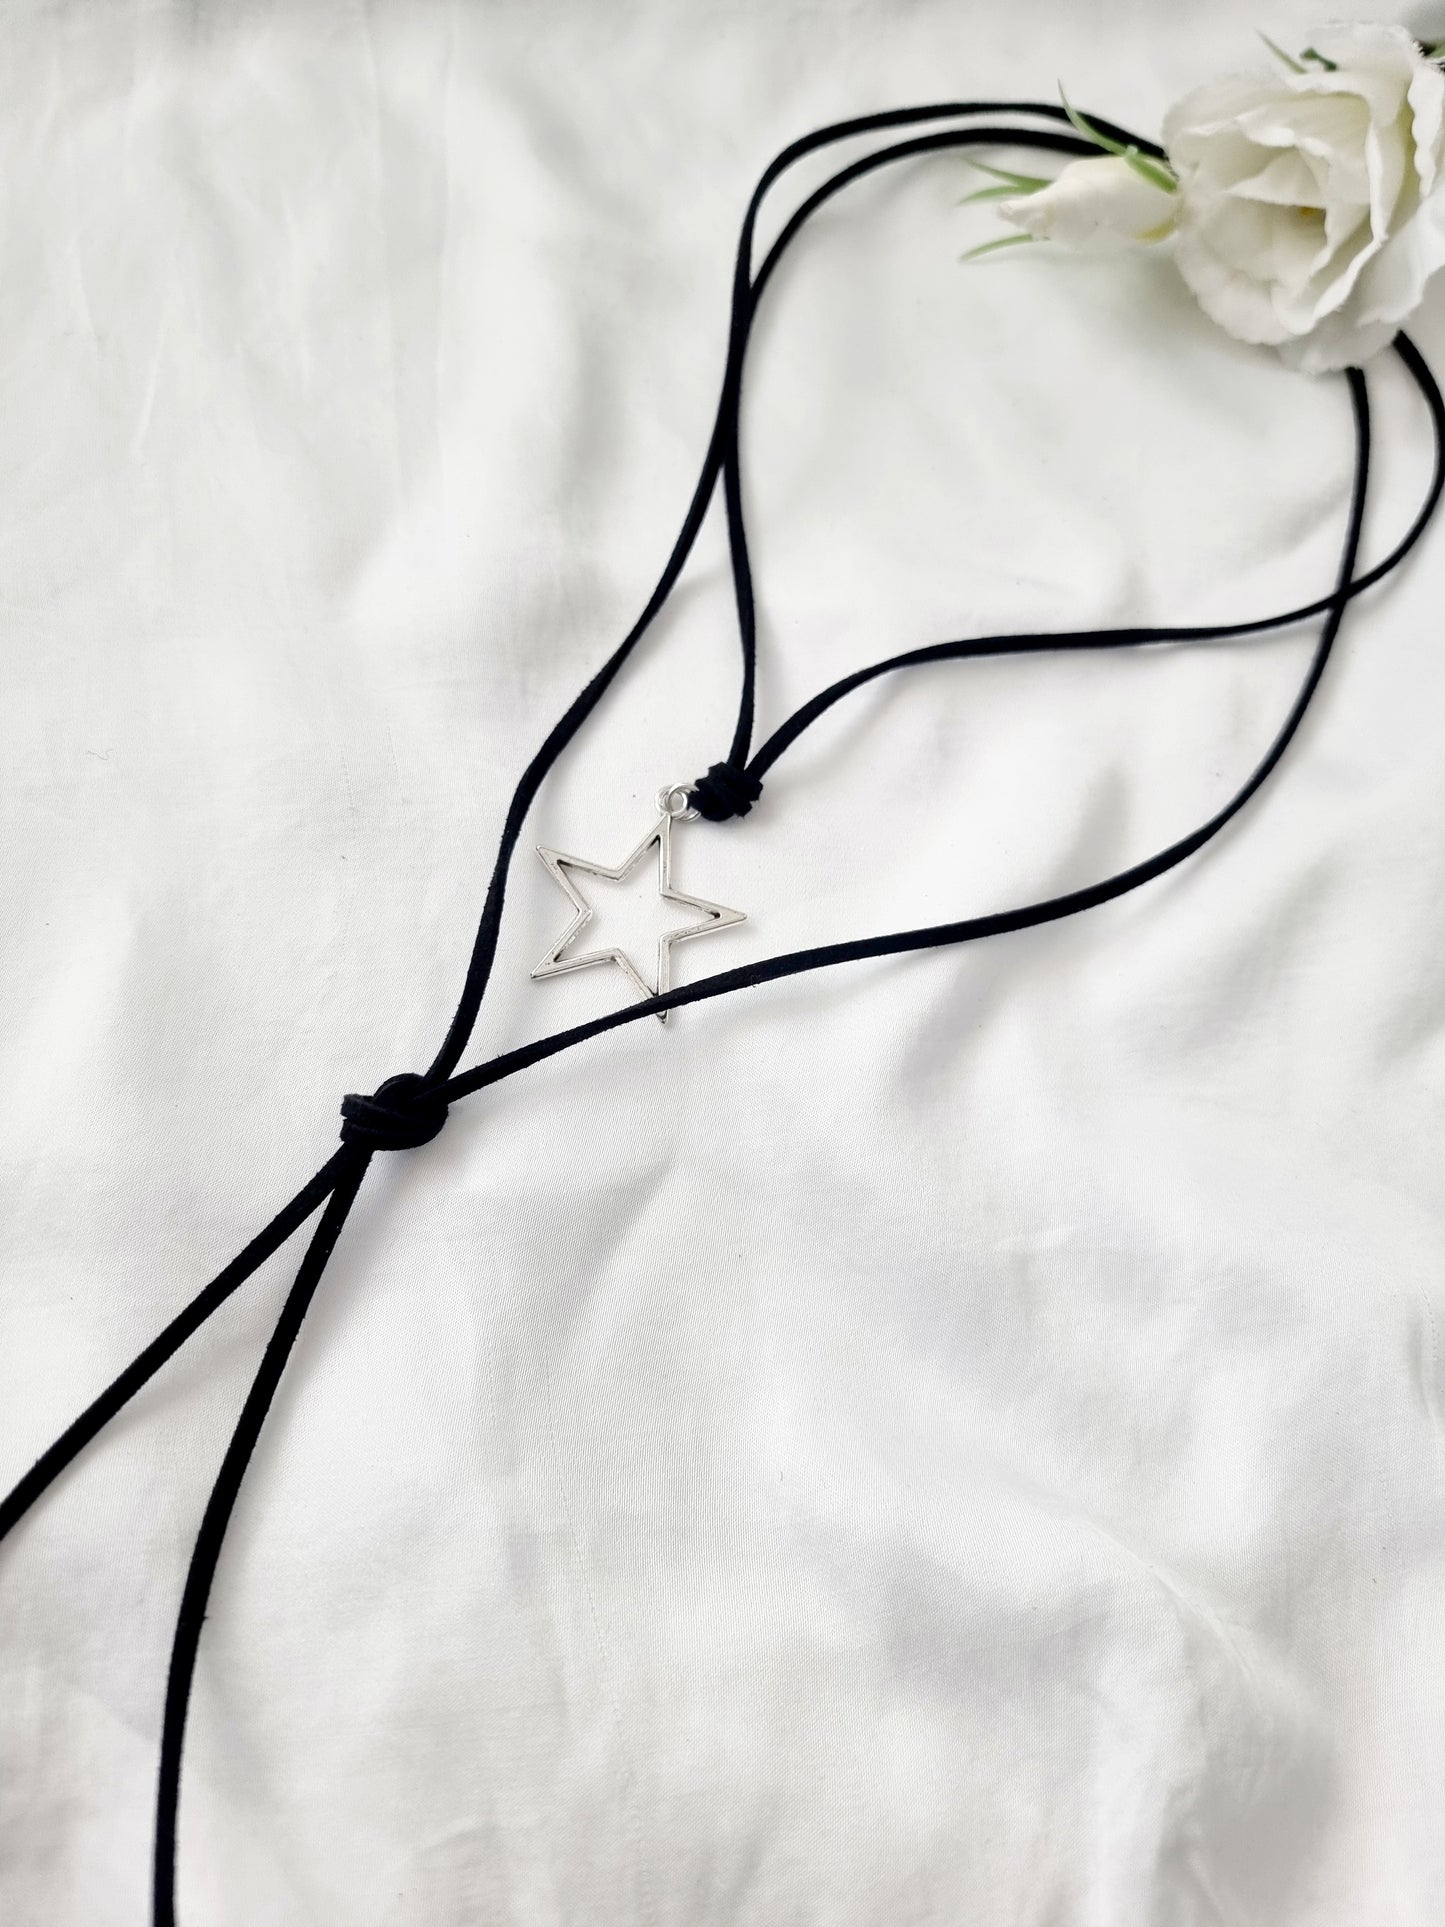 Wickelkette schwarzes Wildlederband mit silbernen Sternchenanhänger